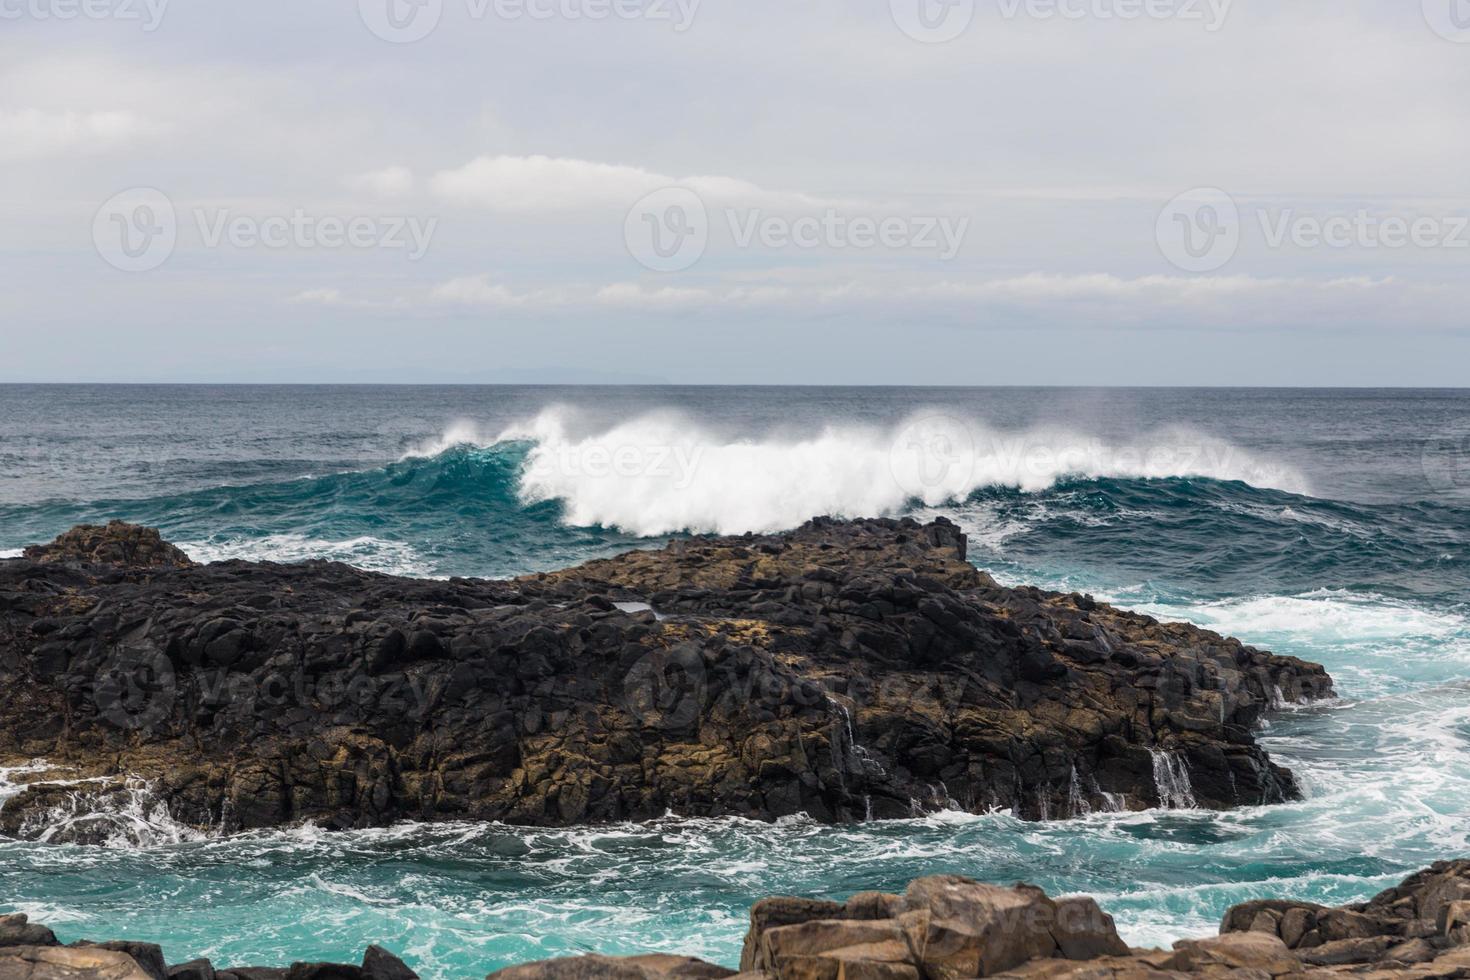 les vagues océaniques turbulentes avec de la mousse blanche battent les pierres côtières photo